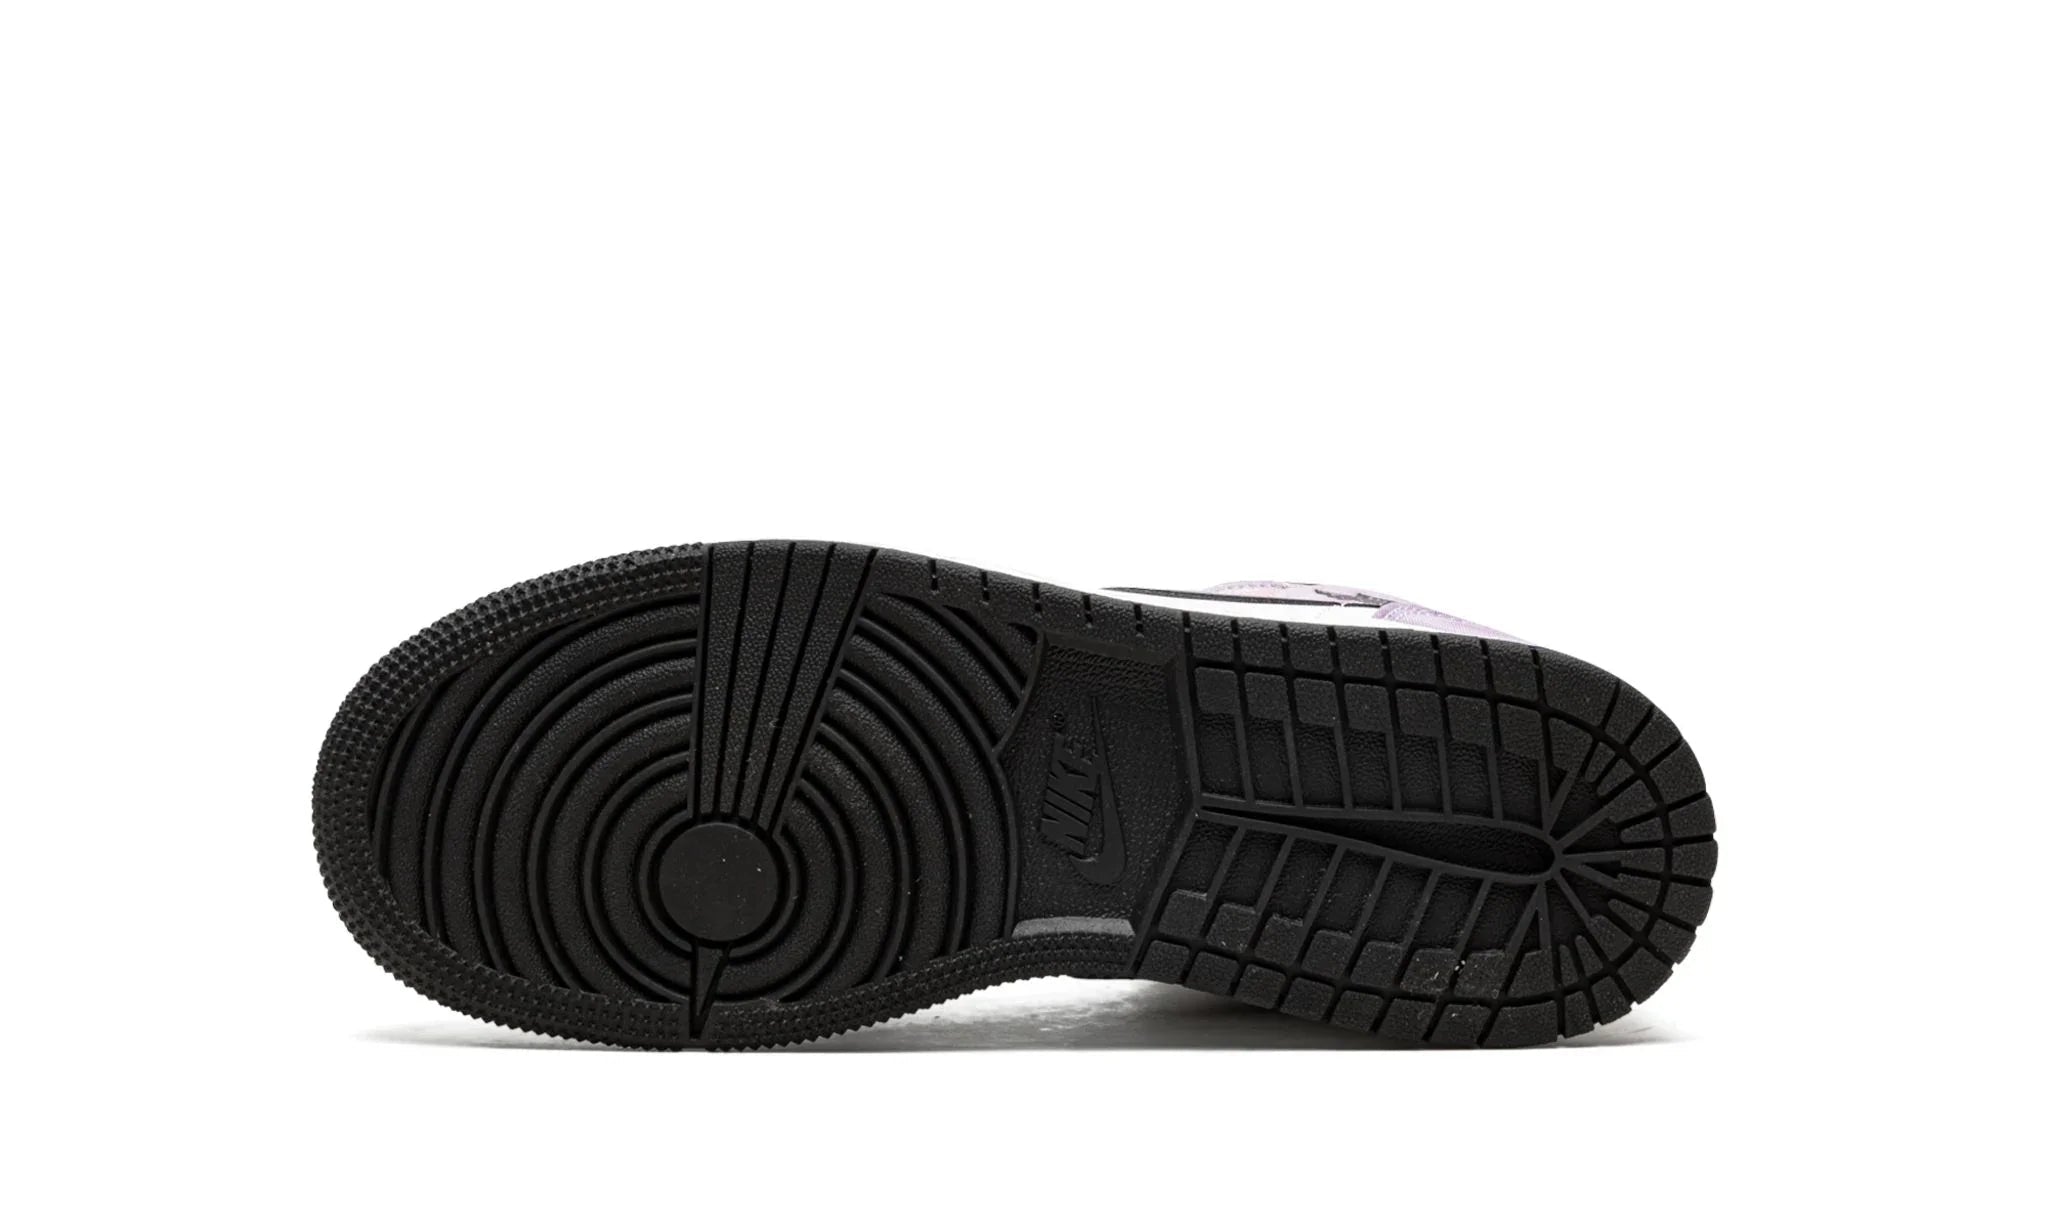 Jordan 1 Mid "Zen Master" - DM6216-001 - Sneakers